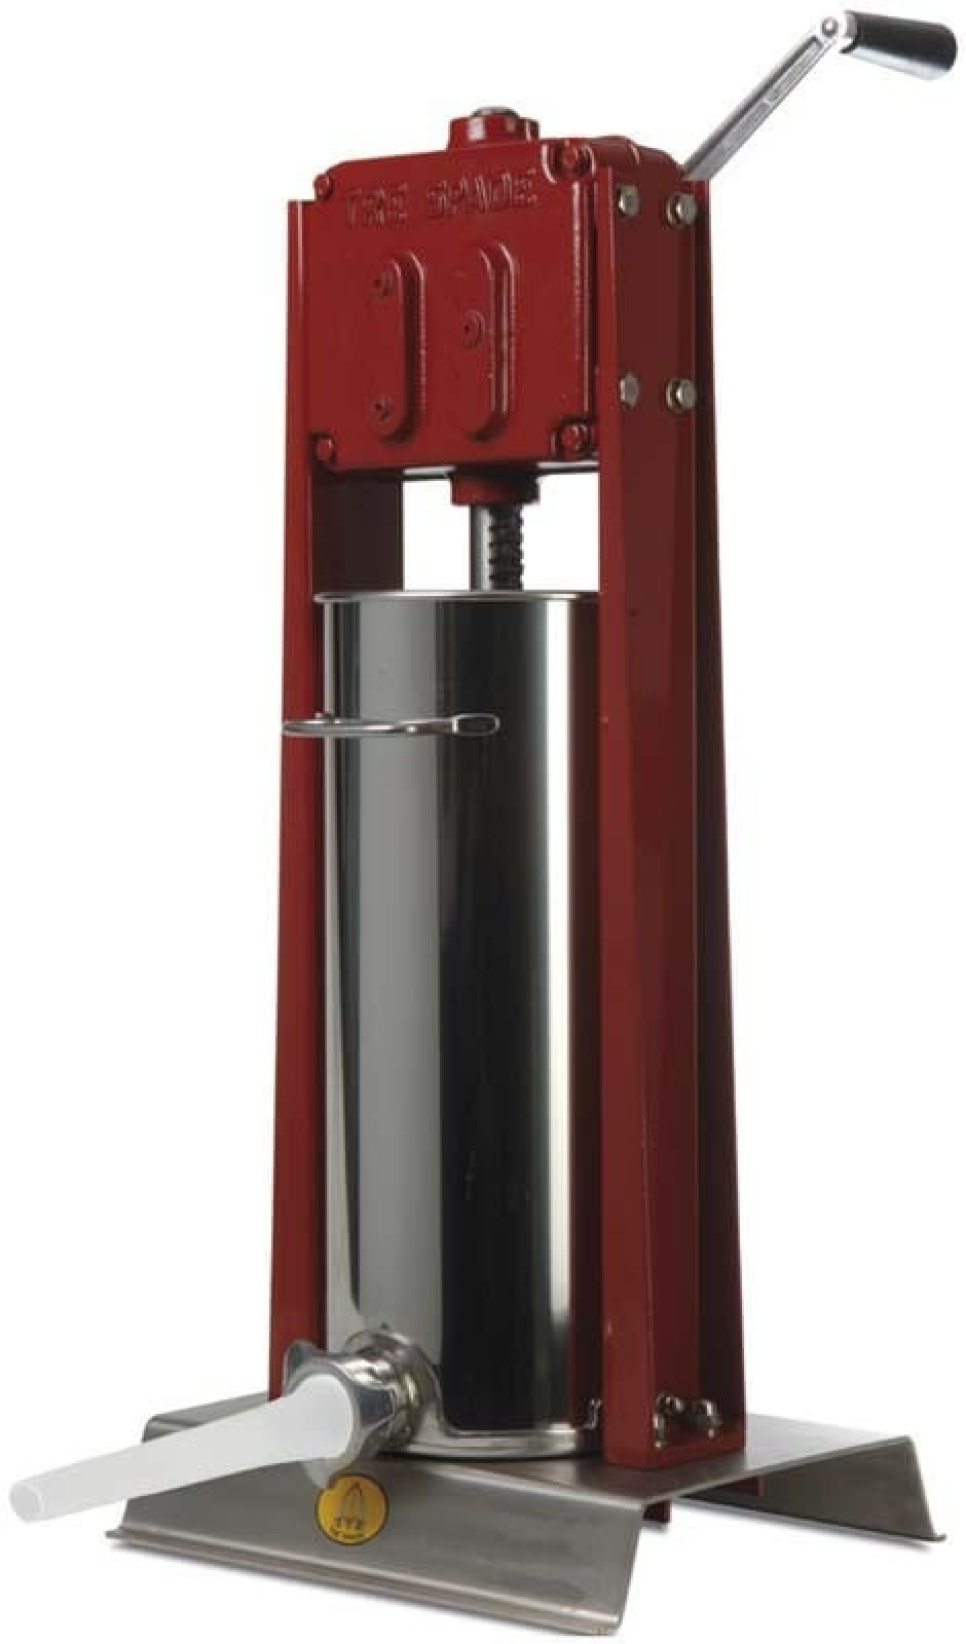 Korvspruta, vertikal, rostfri, 15 liter - Tre Spade i gruppen Köksmaskiner / Skära & Mala / Korvsprutor hos The Kitchen Lab (1095-12591)